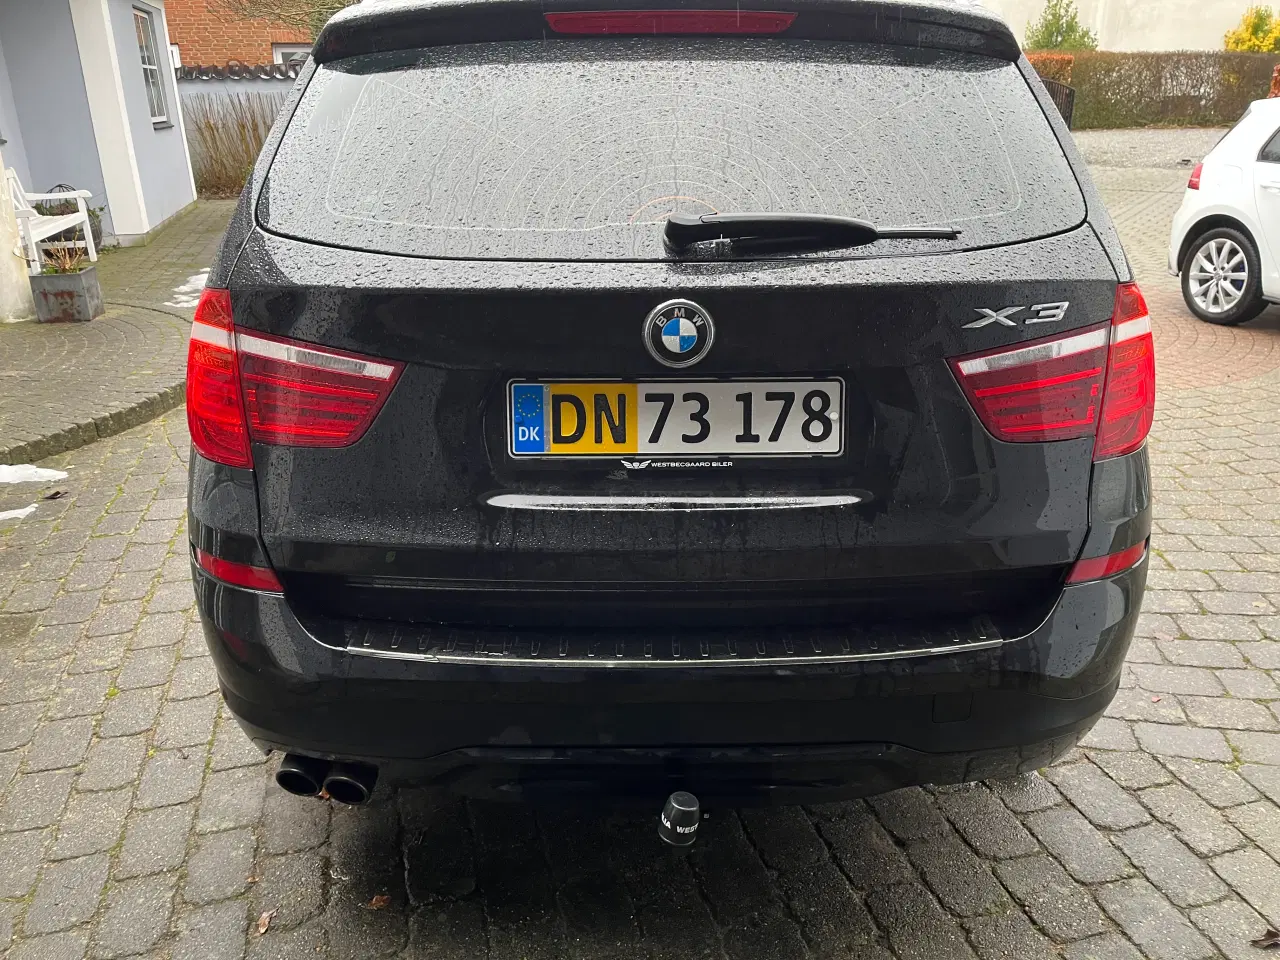 Billede 3 - Flot BMW X3 28i aut./skal sælges nu!